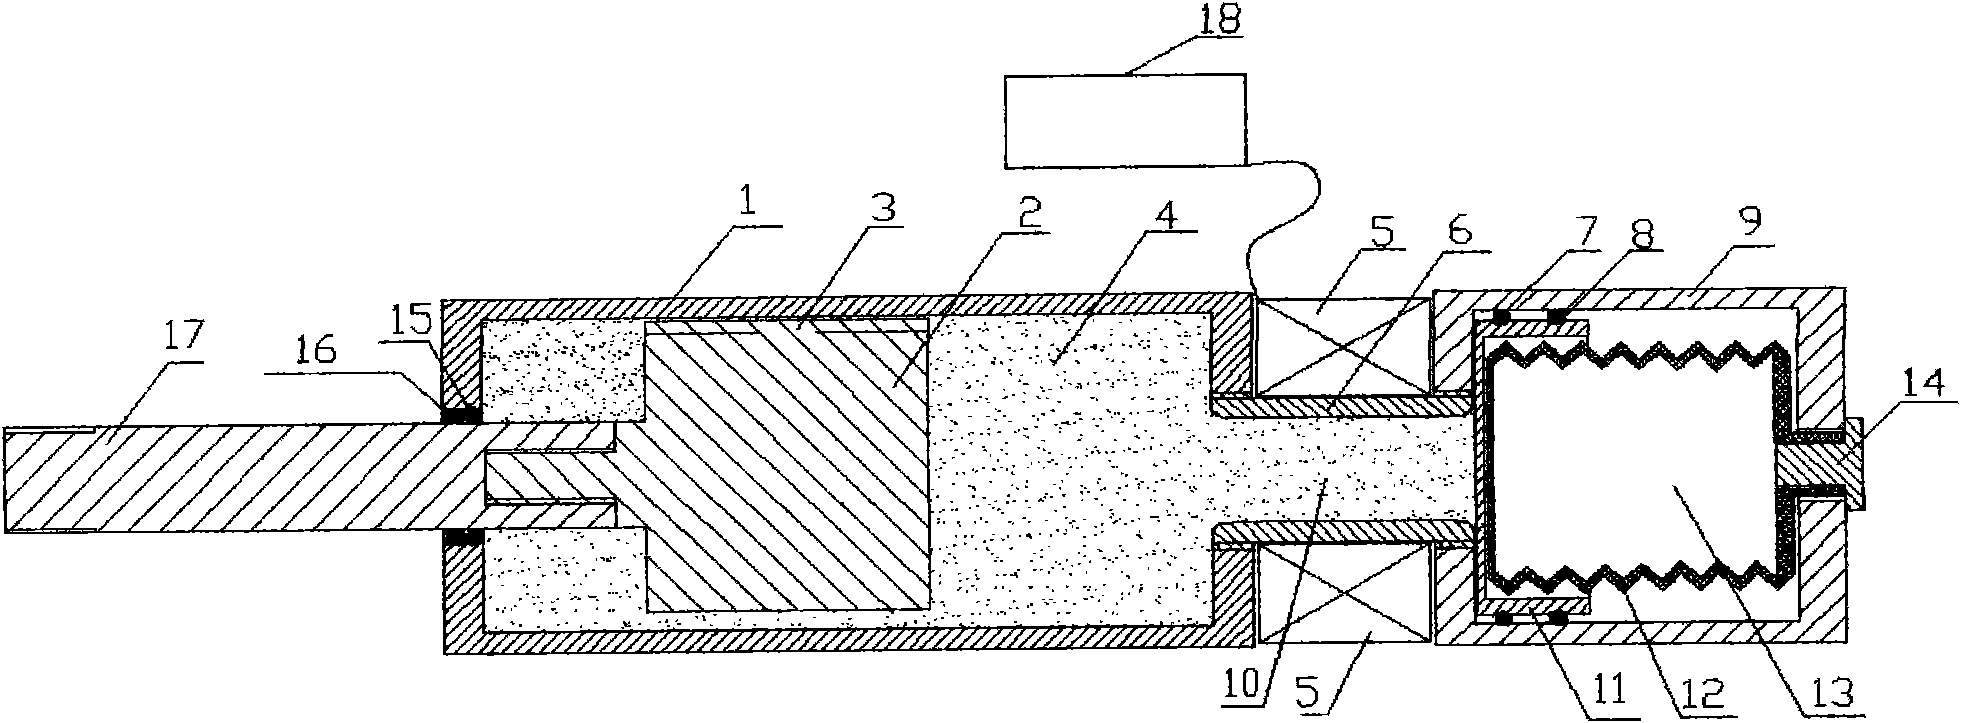 Single-output rod double-cylinder magneto-rheological damper